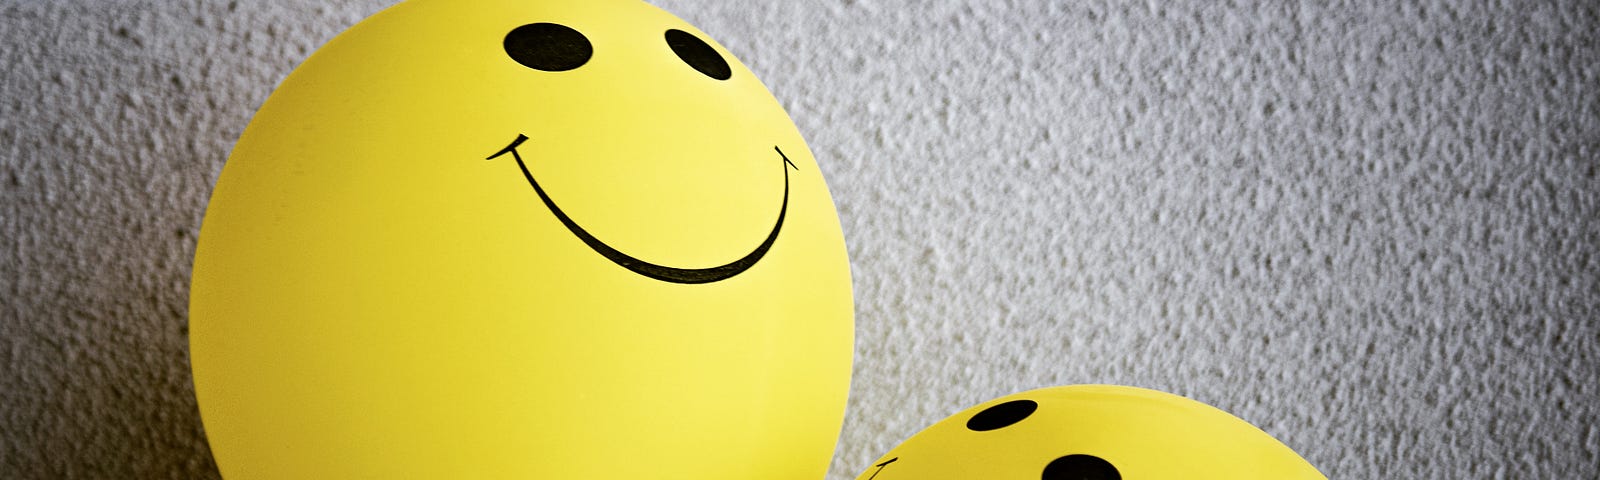 Three smiley face balloons.